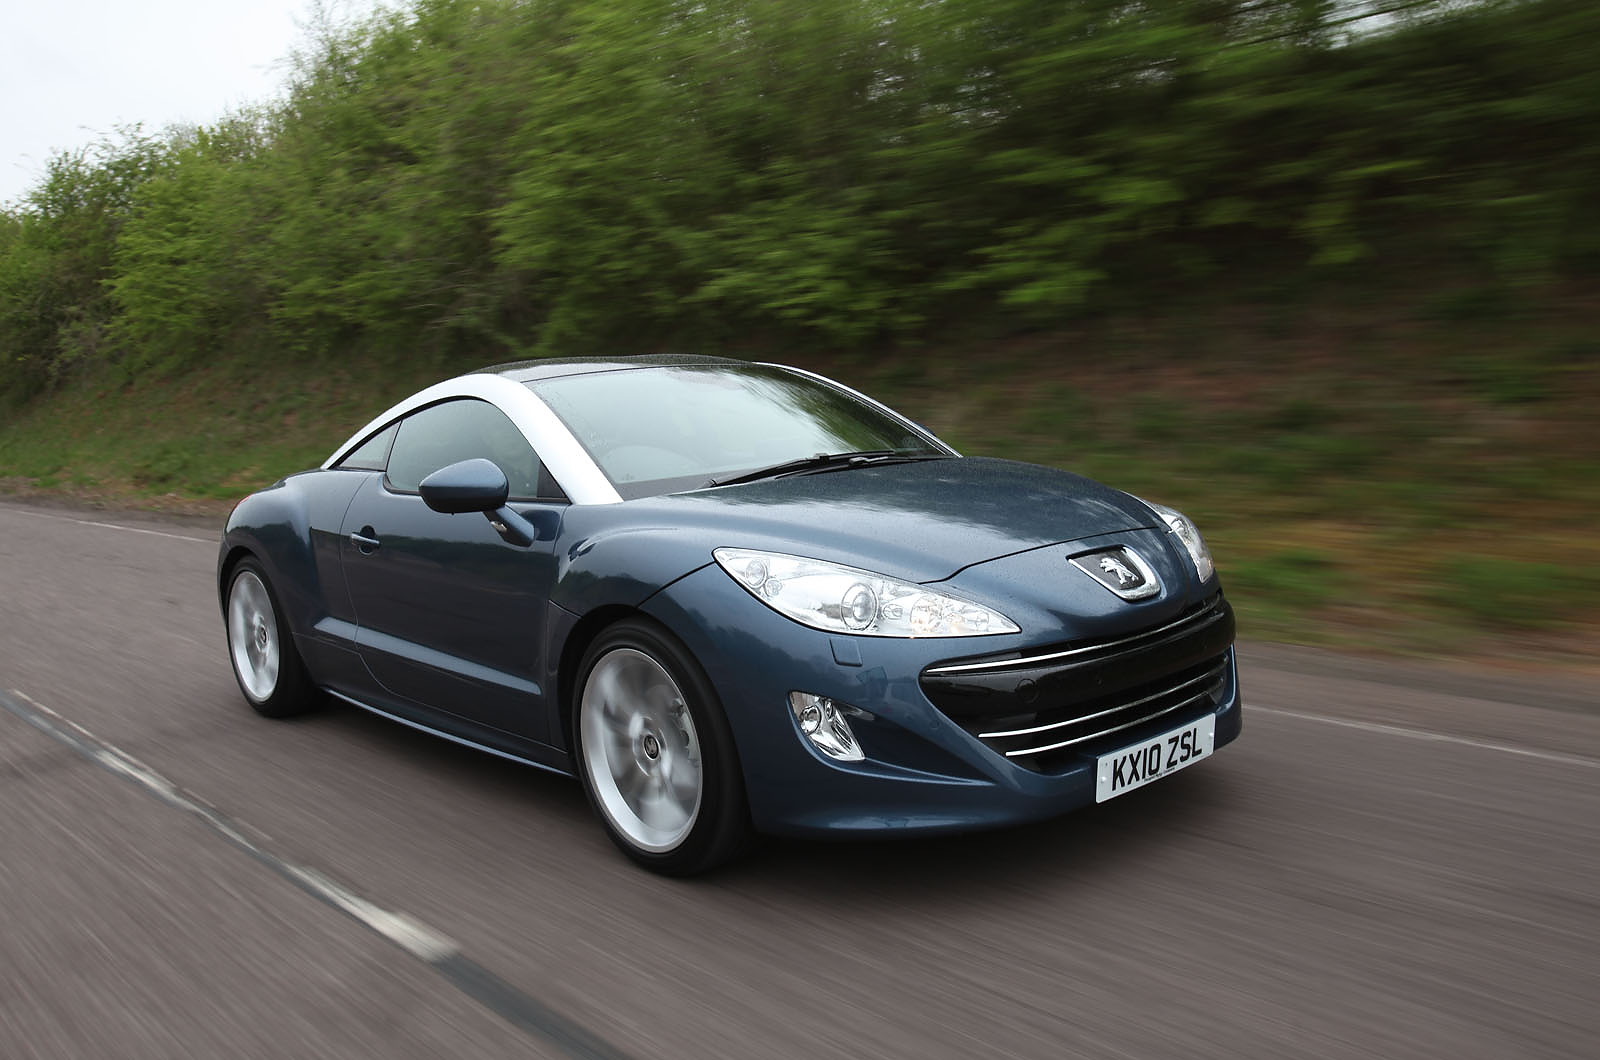 The Clarkson review: Peugeot RCZ (2010)